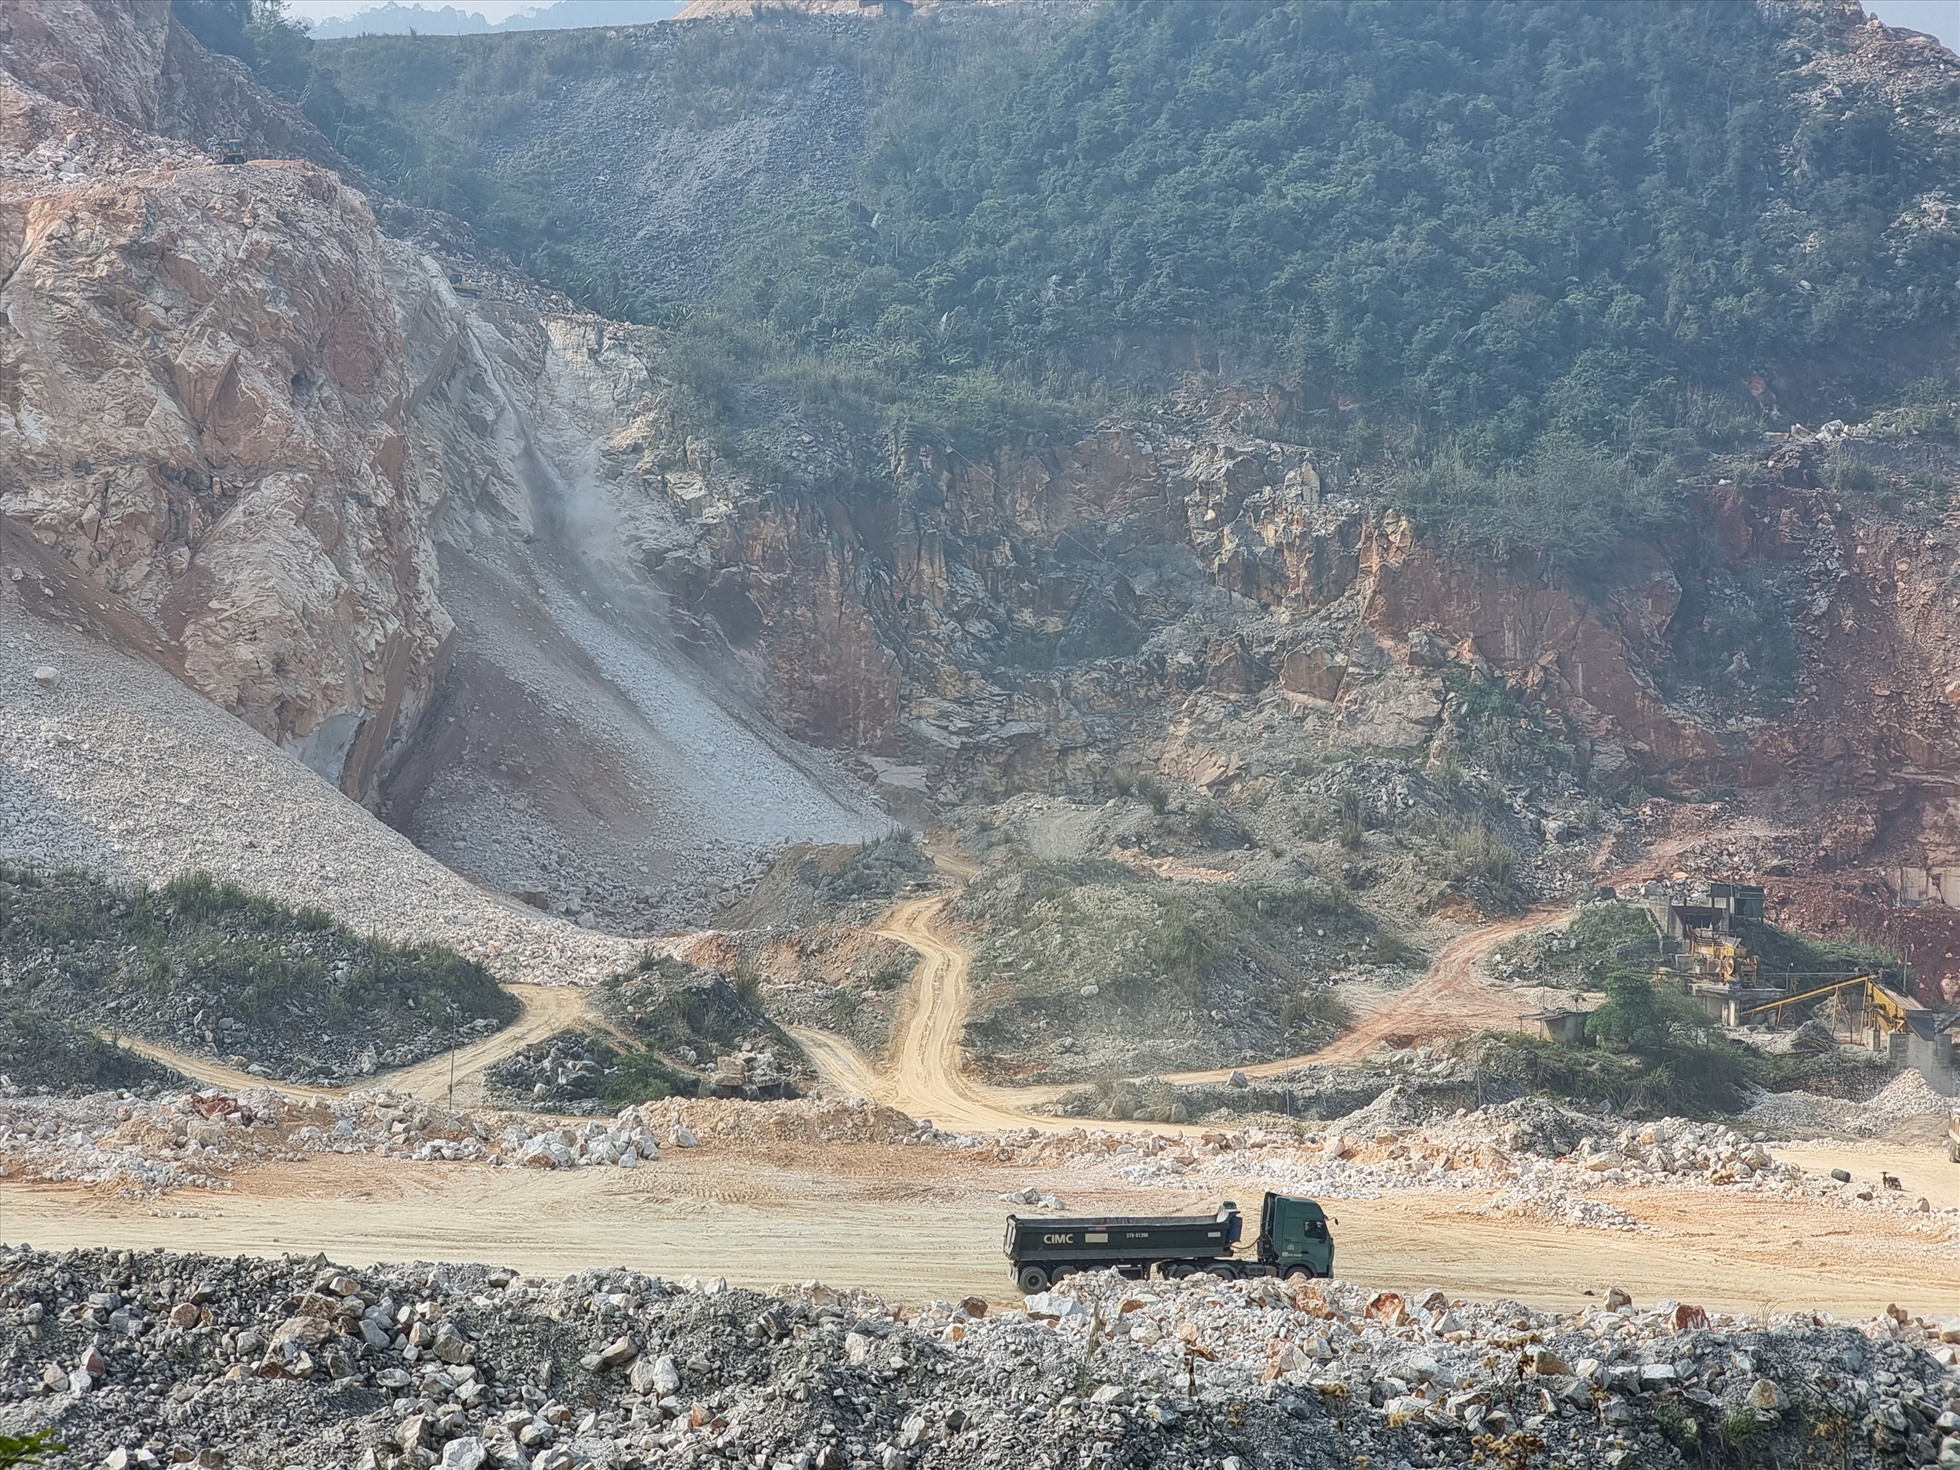 Hoạt động khai thác khoáng sản ở Quỳ Hợp đang gây nhiều bức xúc cho người dân địa phương. Ảnh: Quang Đại